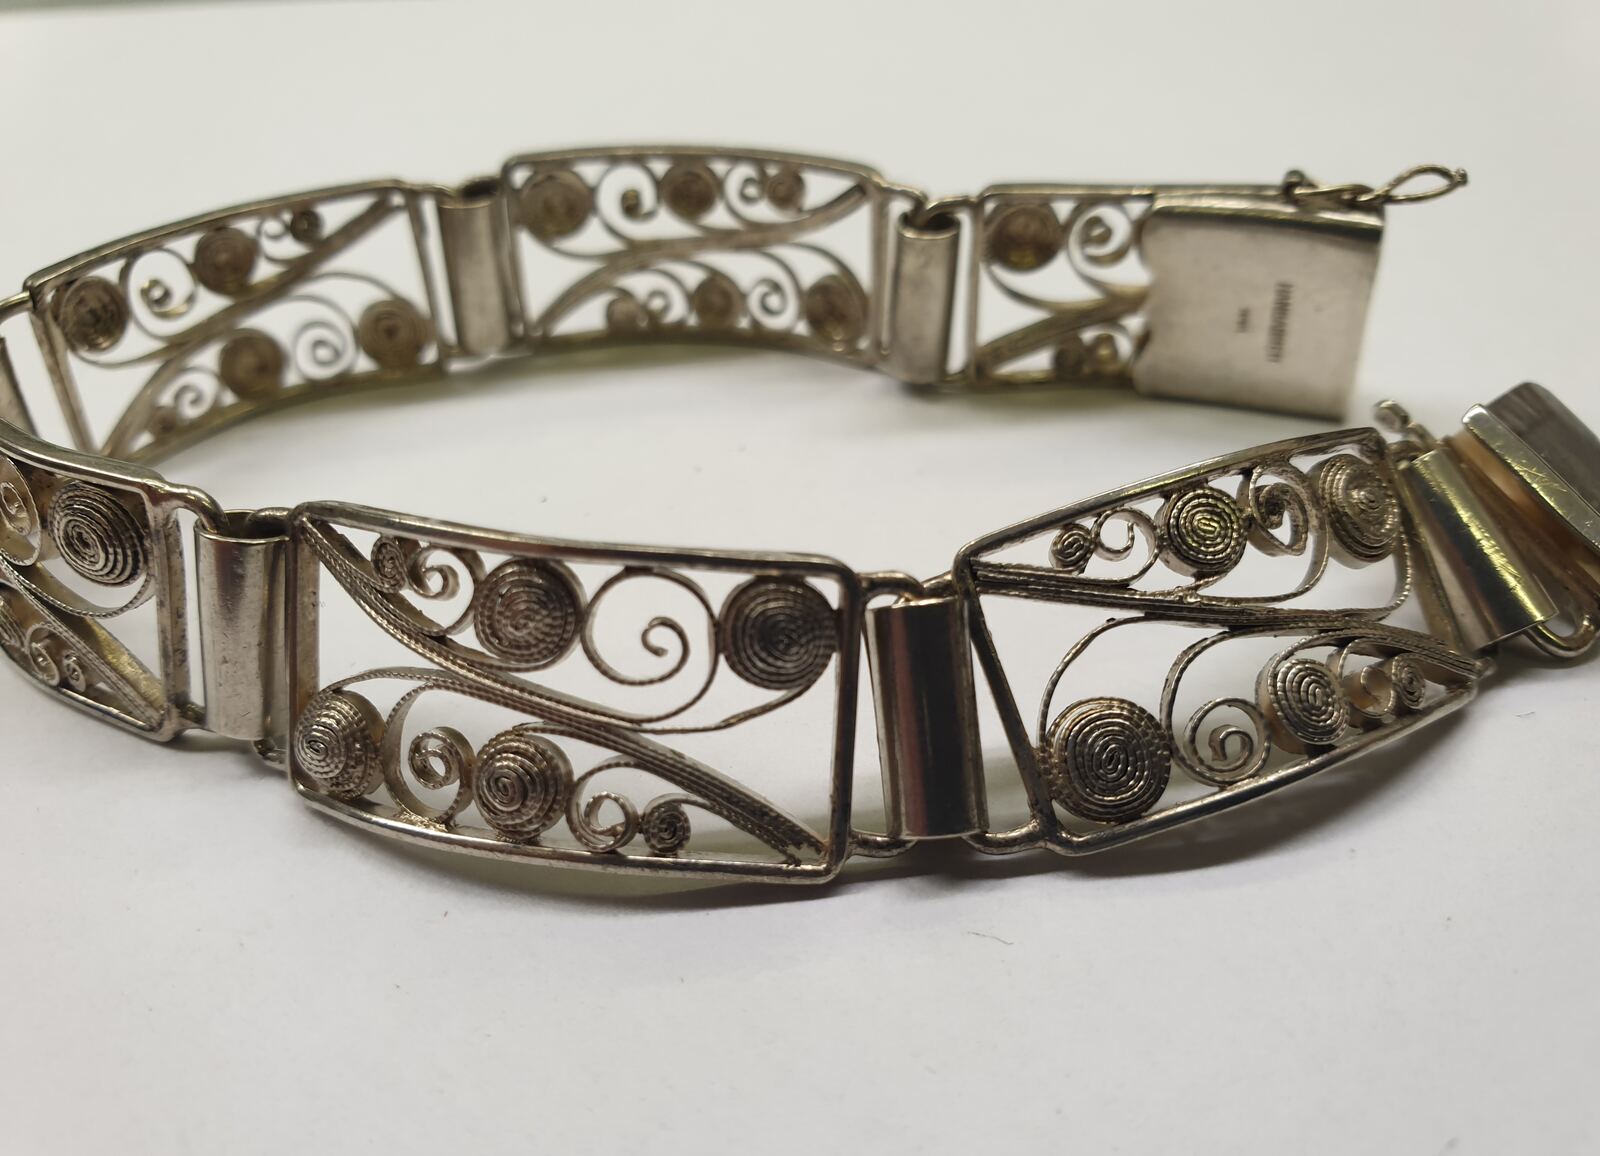 835er Silber Gebrauchsspuren getragen, | MA-Shops Damenarmband filigran Antikschmuck Armband mit Silberamrband Armband